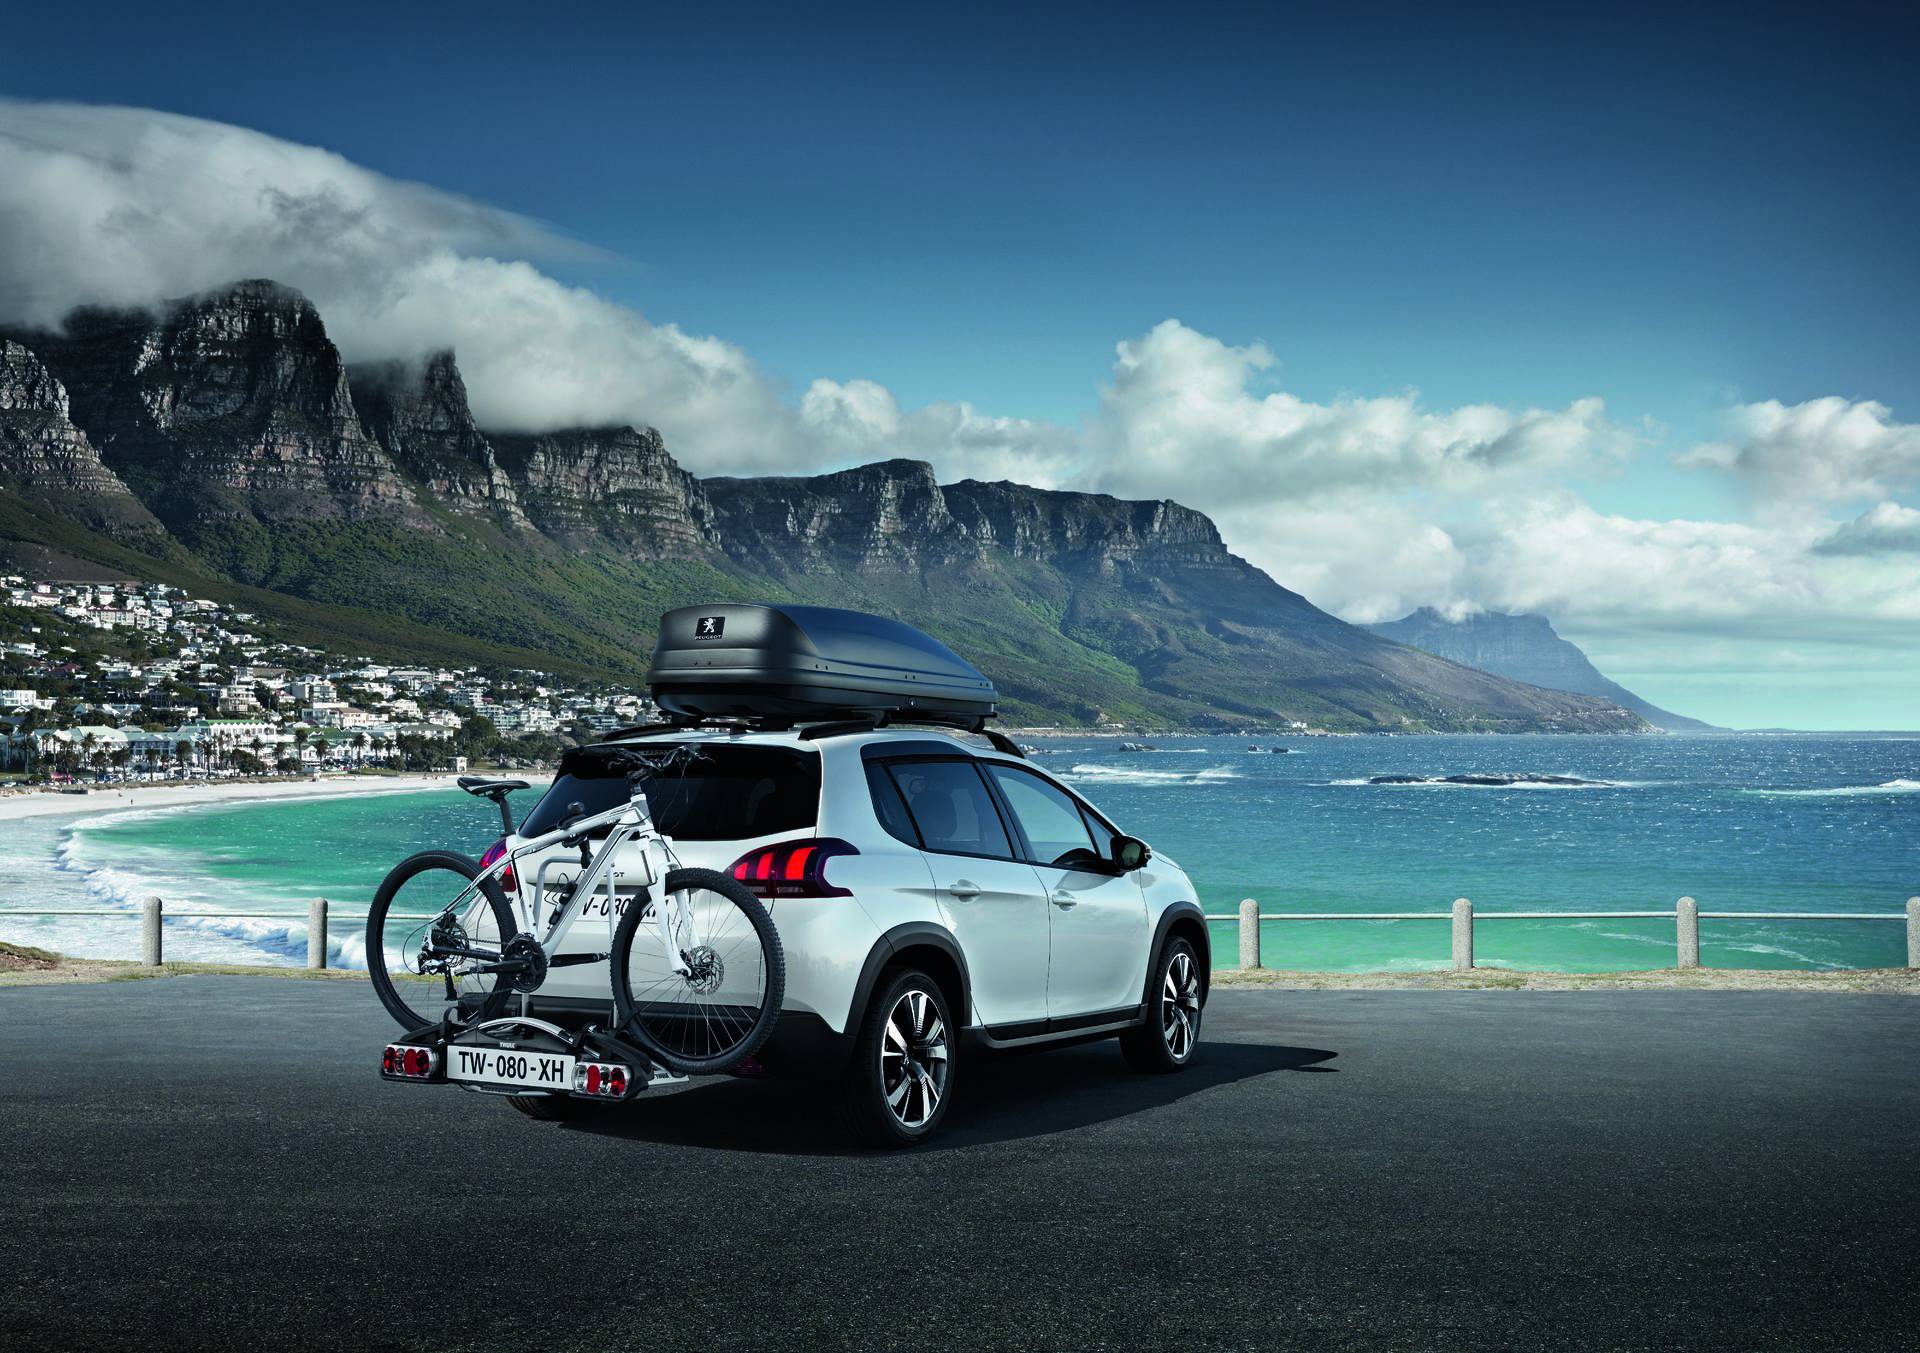 Besplatni ljetni pregled za Peugeot vozila